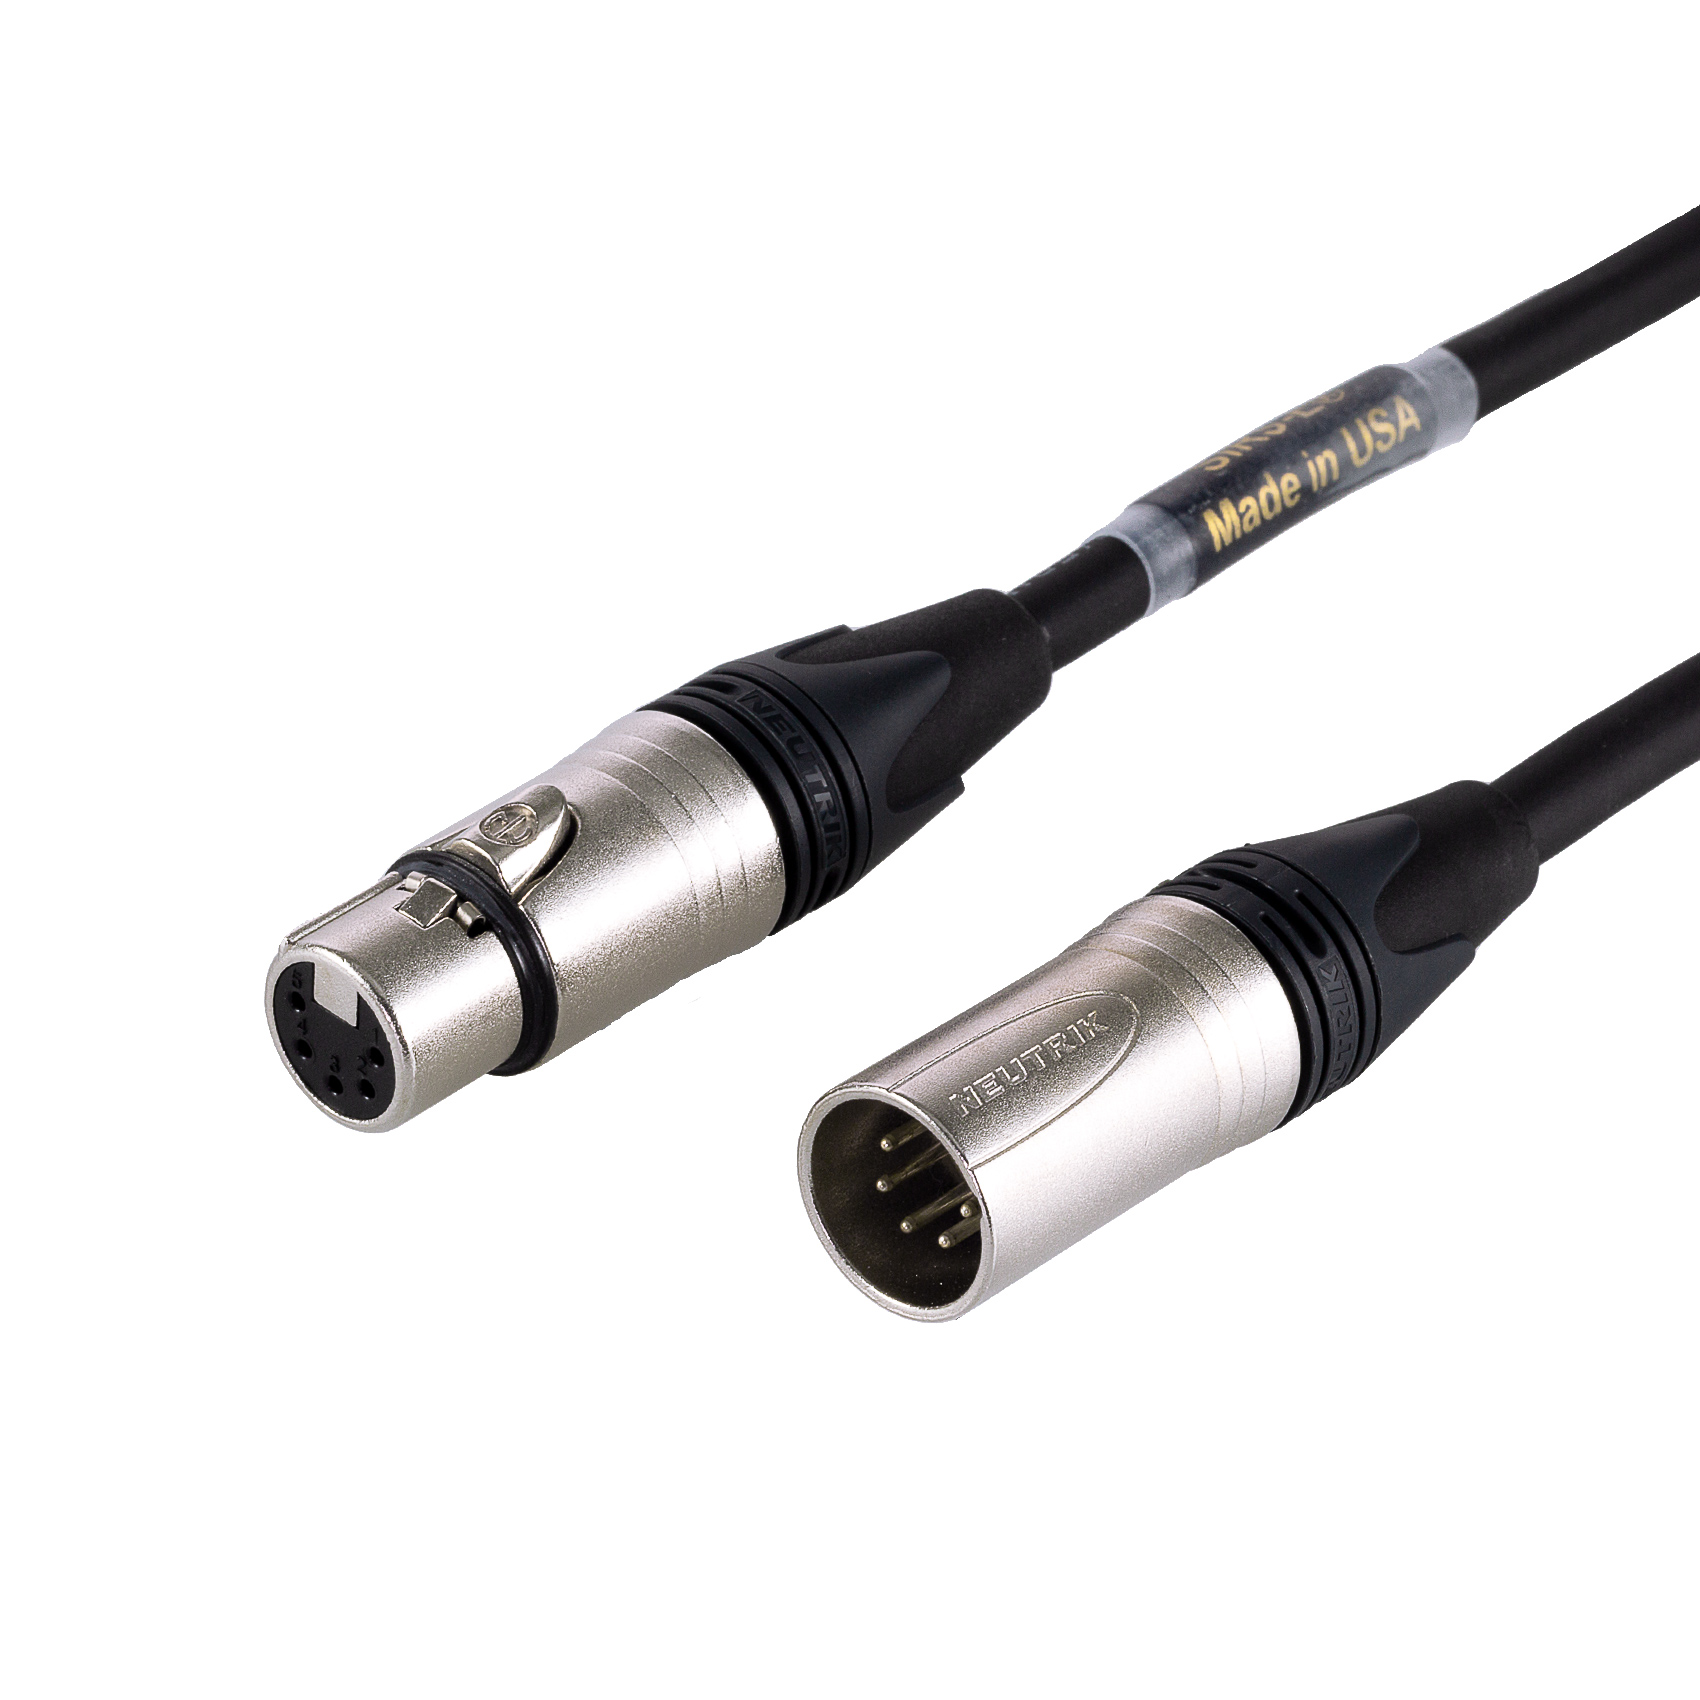 SIRS-E High Quality Flexible DMX Cable, 5 Pin XLR - SIRS